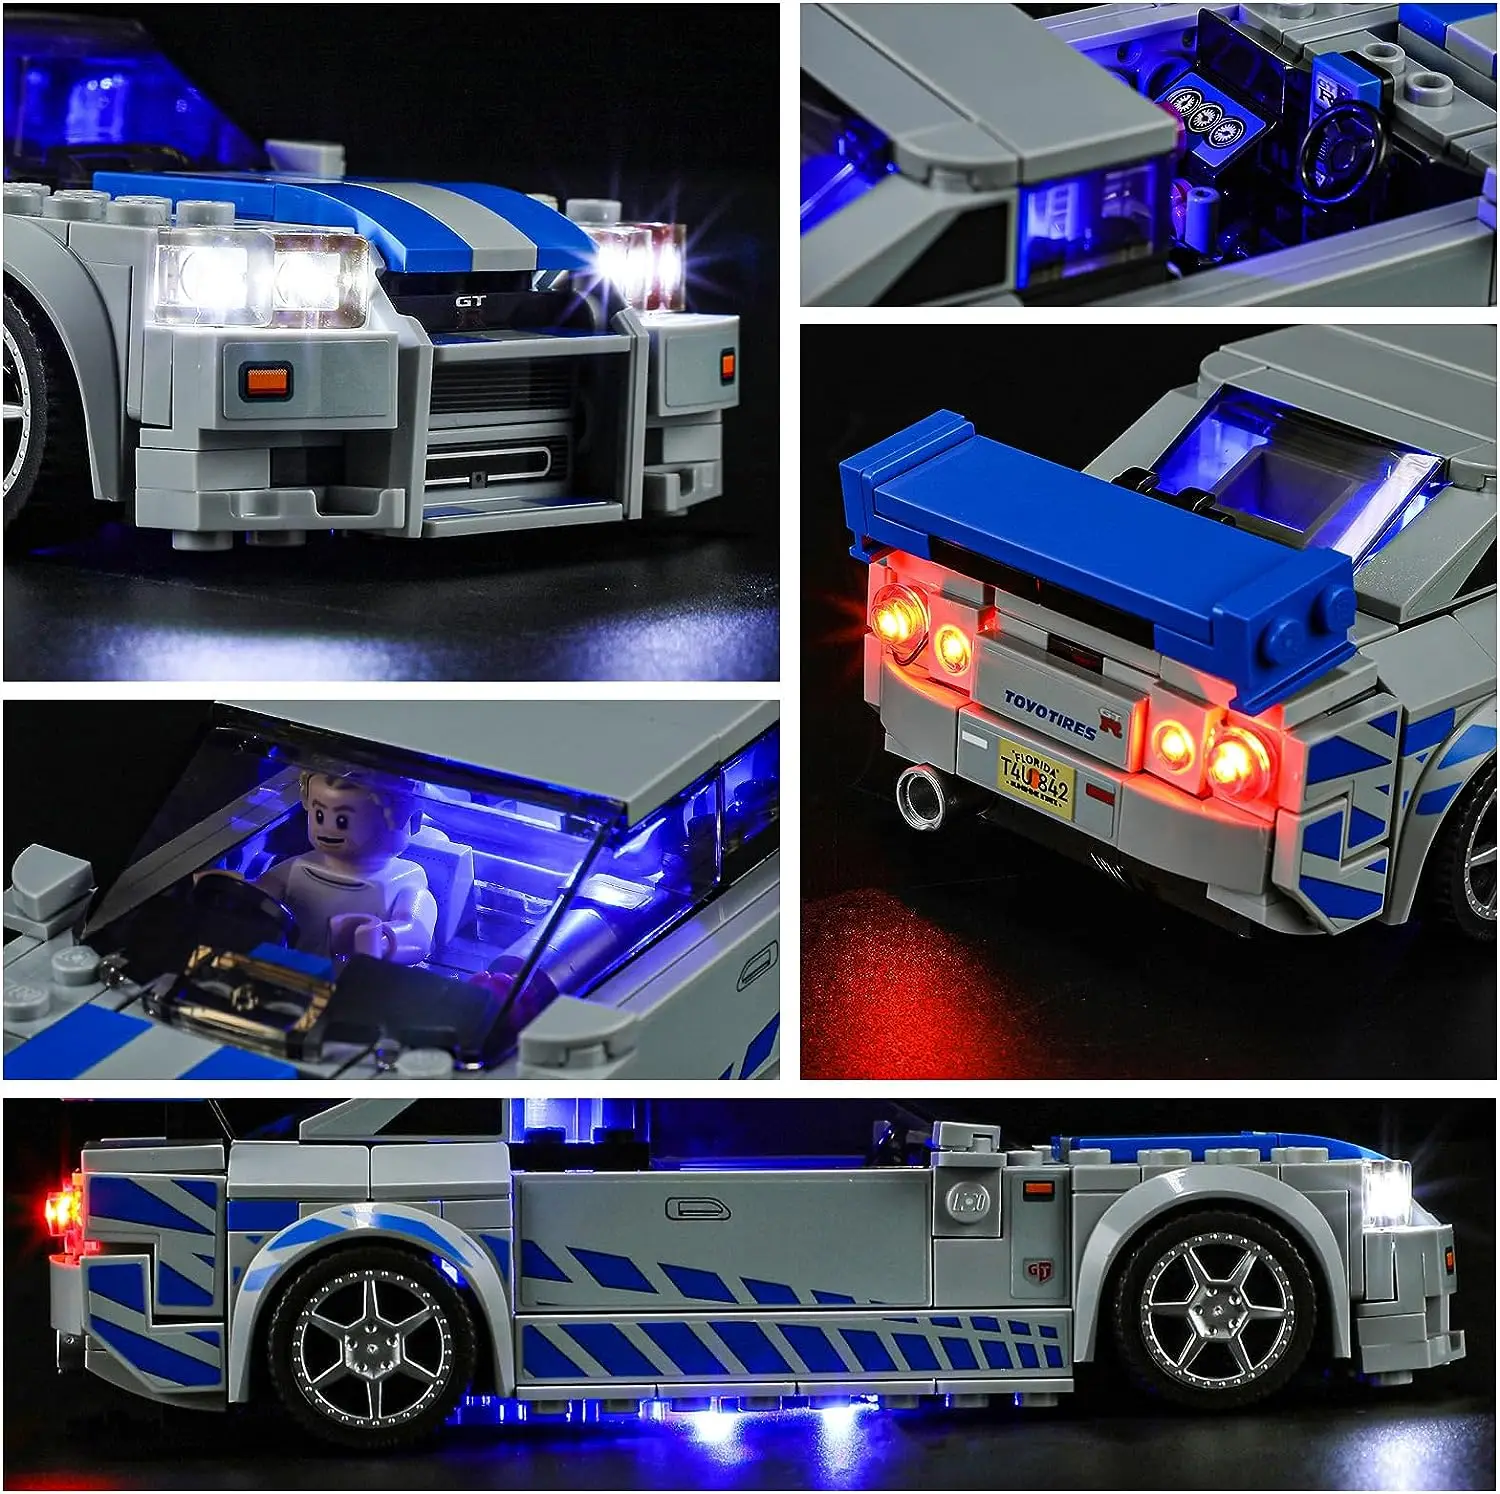 Hprosper LED Fény 76917 Sebesség 2 Fast 2 Furious Nissan Skyline GT-R (R34) Dekorációs Lámpa (építőkövei Nem Tartalmazza)5